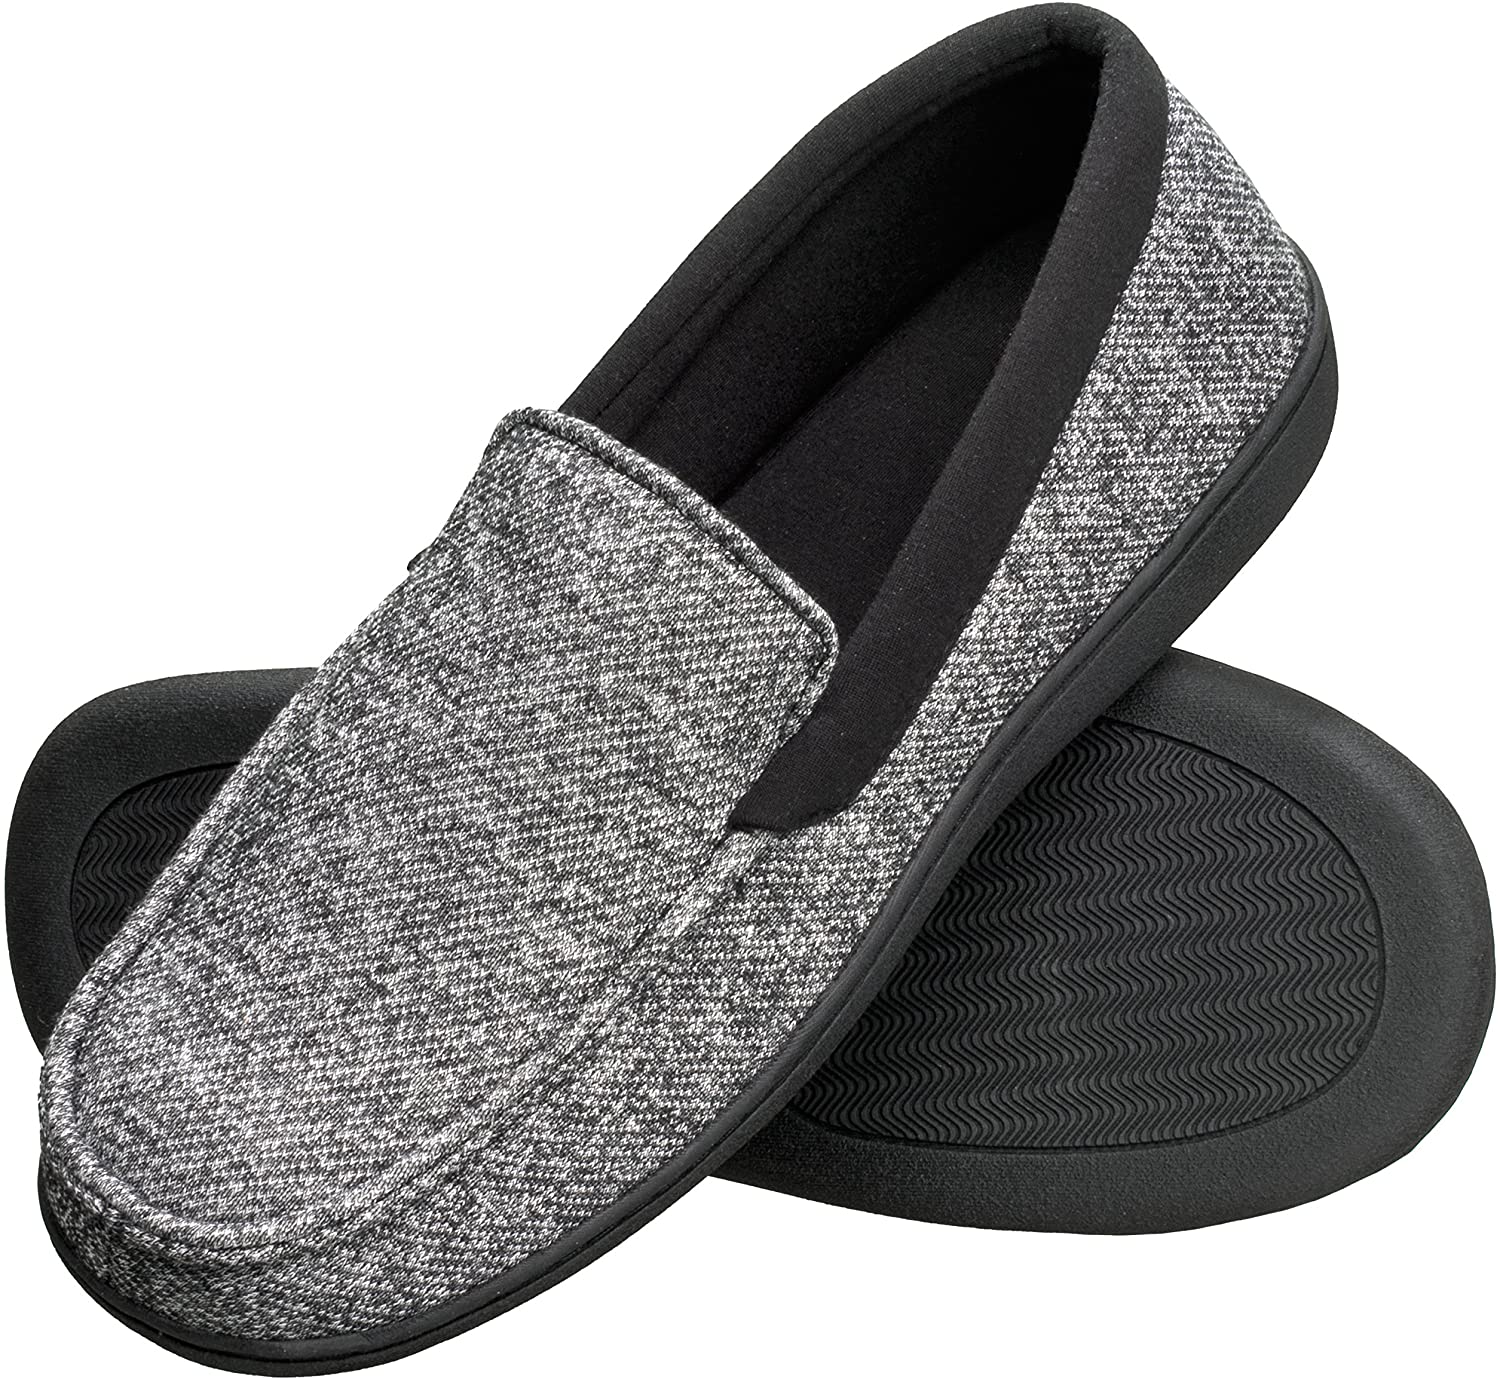 kooi Modernisering Doodt Hanes Men's Slippers House Shoes Moccasin Comfort Memory Foam Indoor  Outdoor Fre | eBay